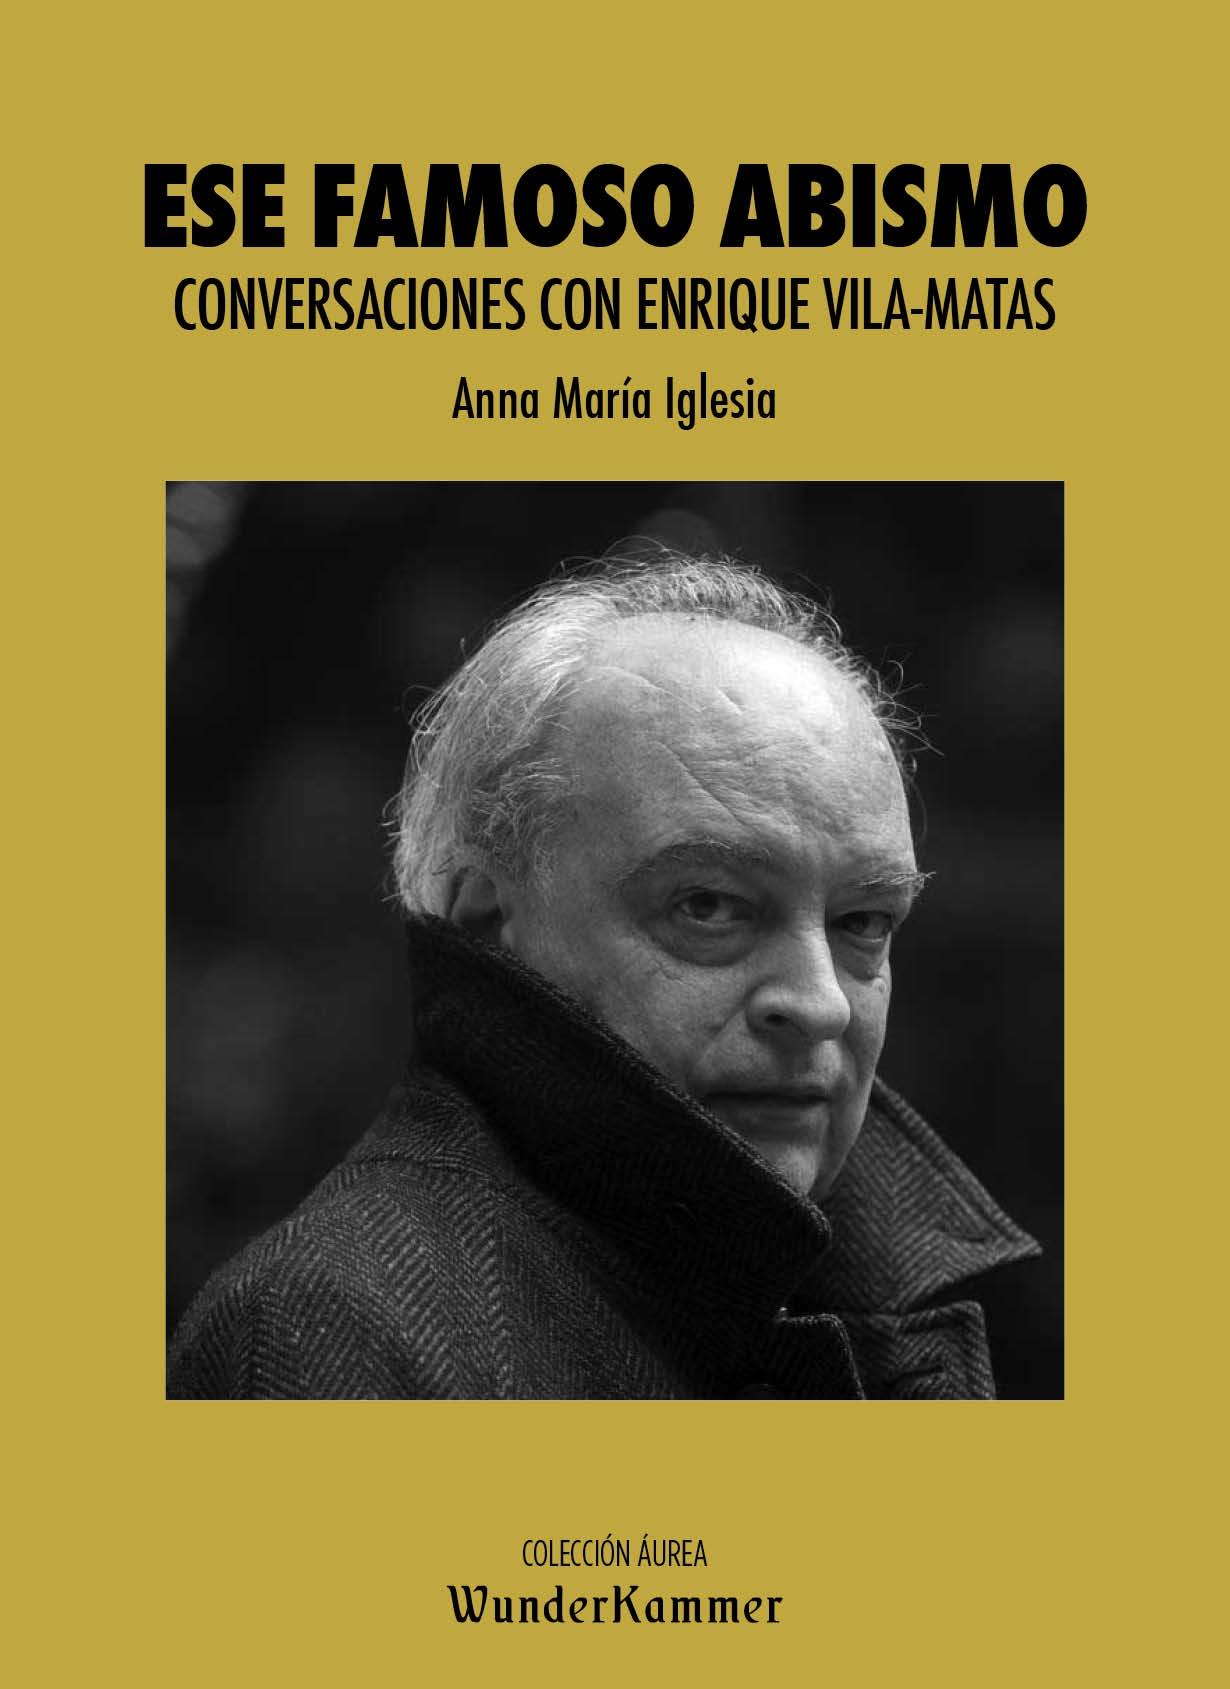 Ese famoso abismo "Conversaciones con Enrique Vila-Matas". 